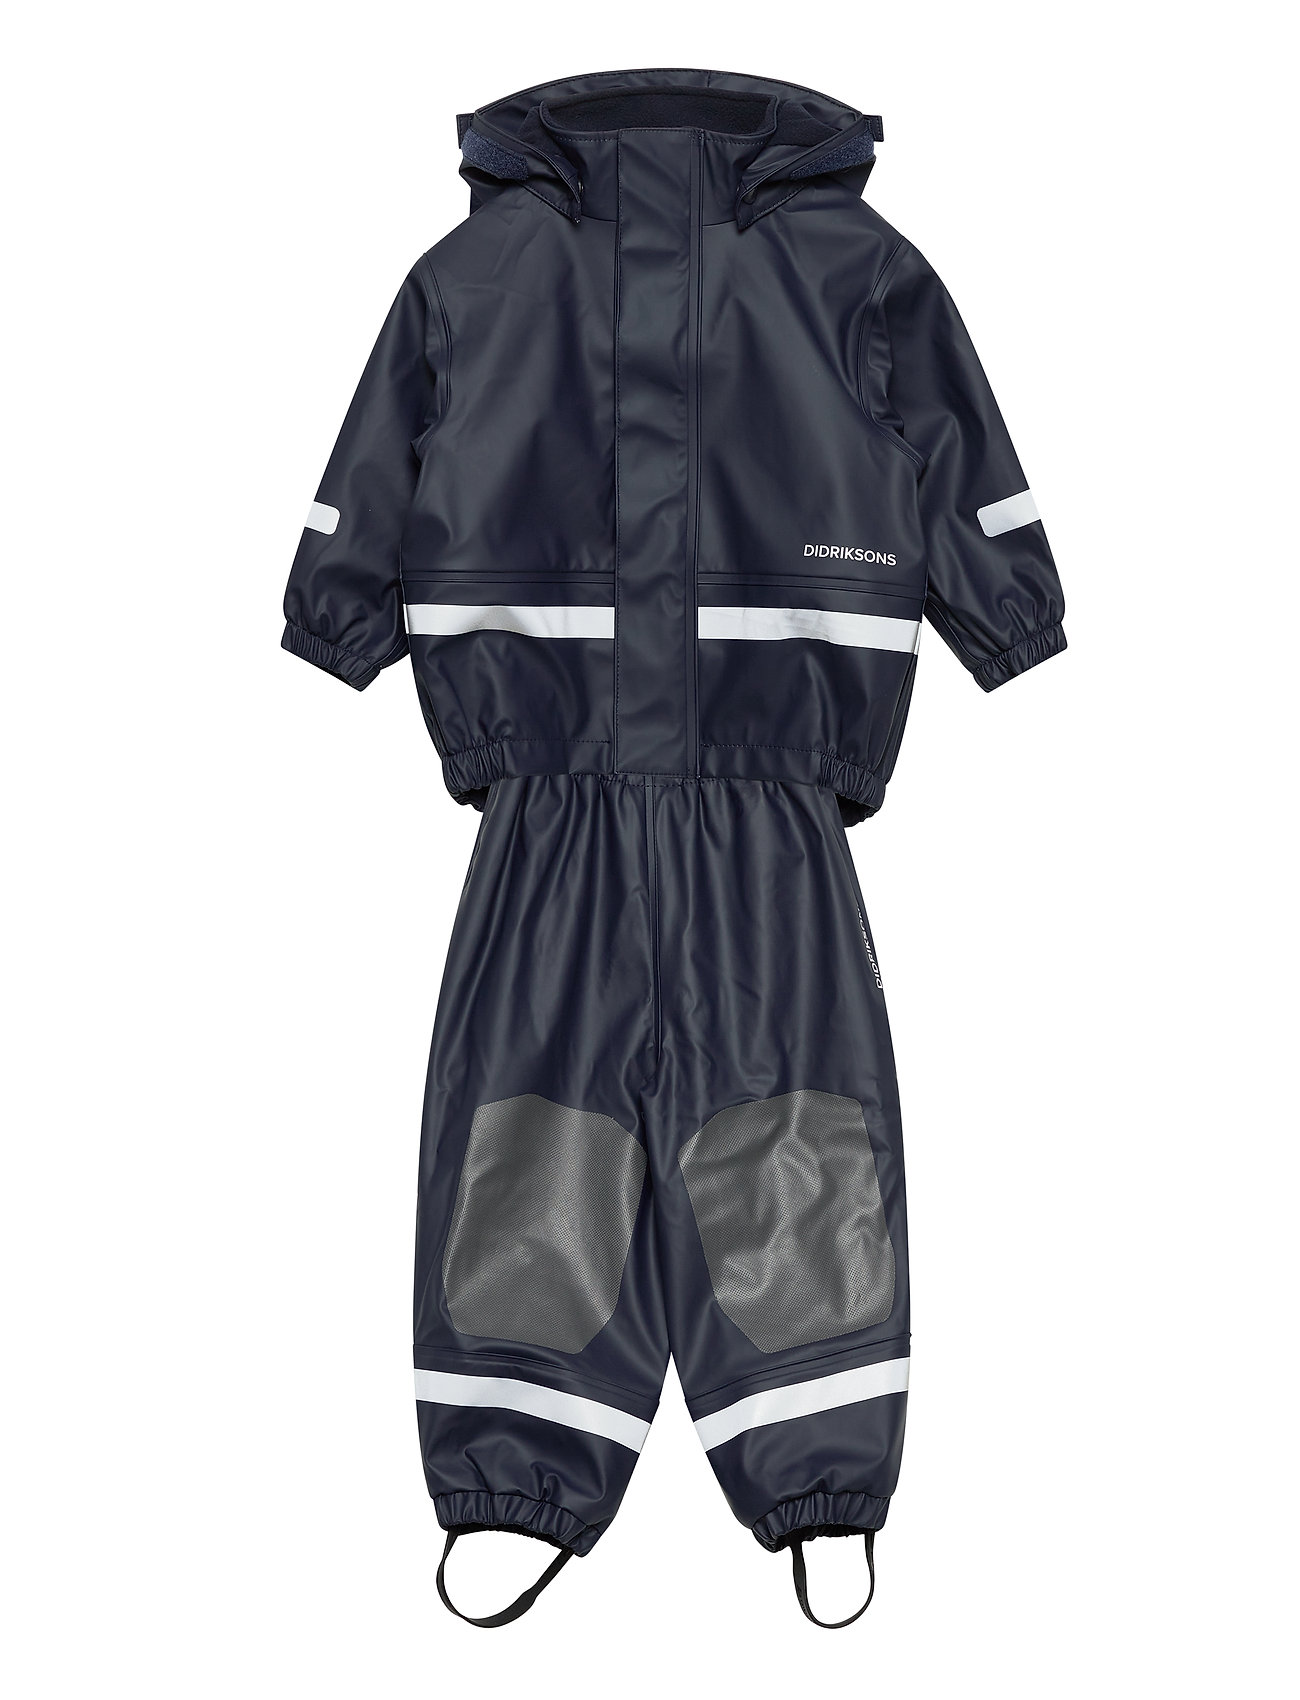 Lilla Boardman Kids Set 5 Outerwear Rainwear Sets & Coveralls Blå Didriksons langærmede heldragter for børn - Pashion.dk